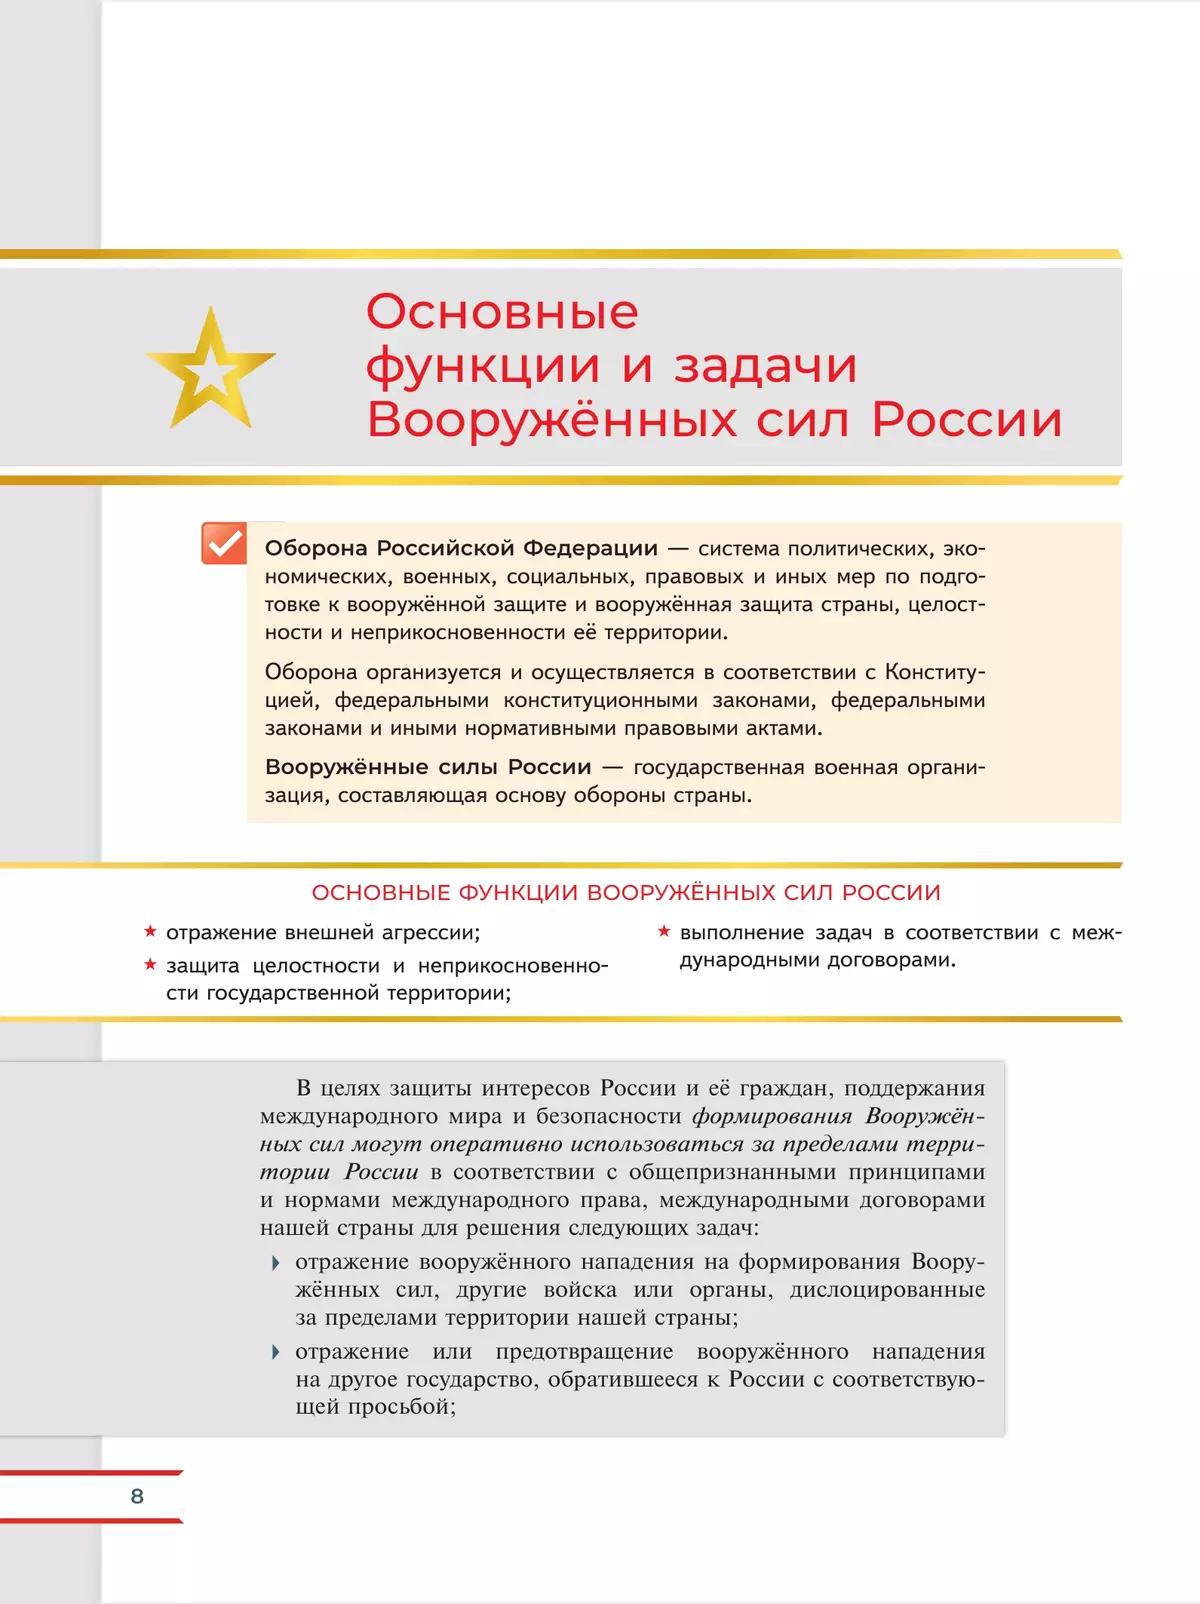 Армия России на защите Отечества. Книга для учащихся 3